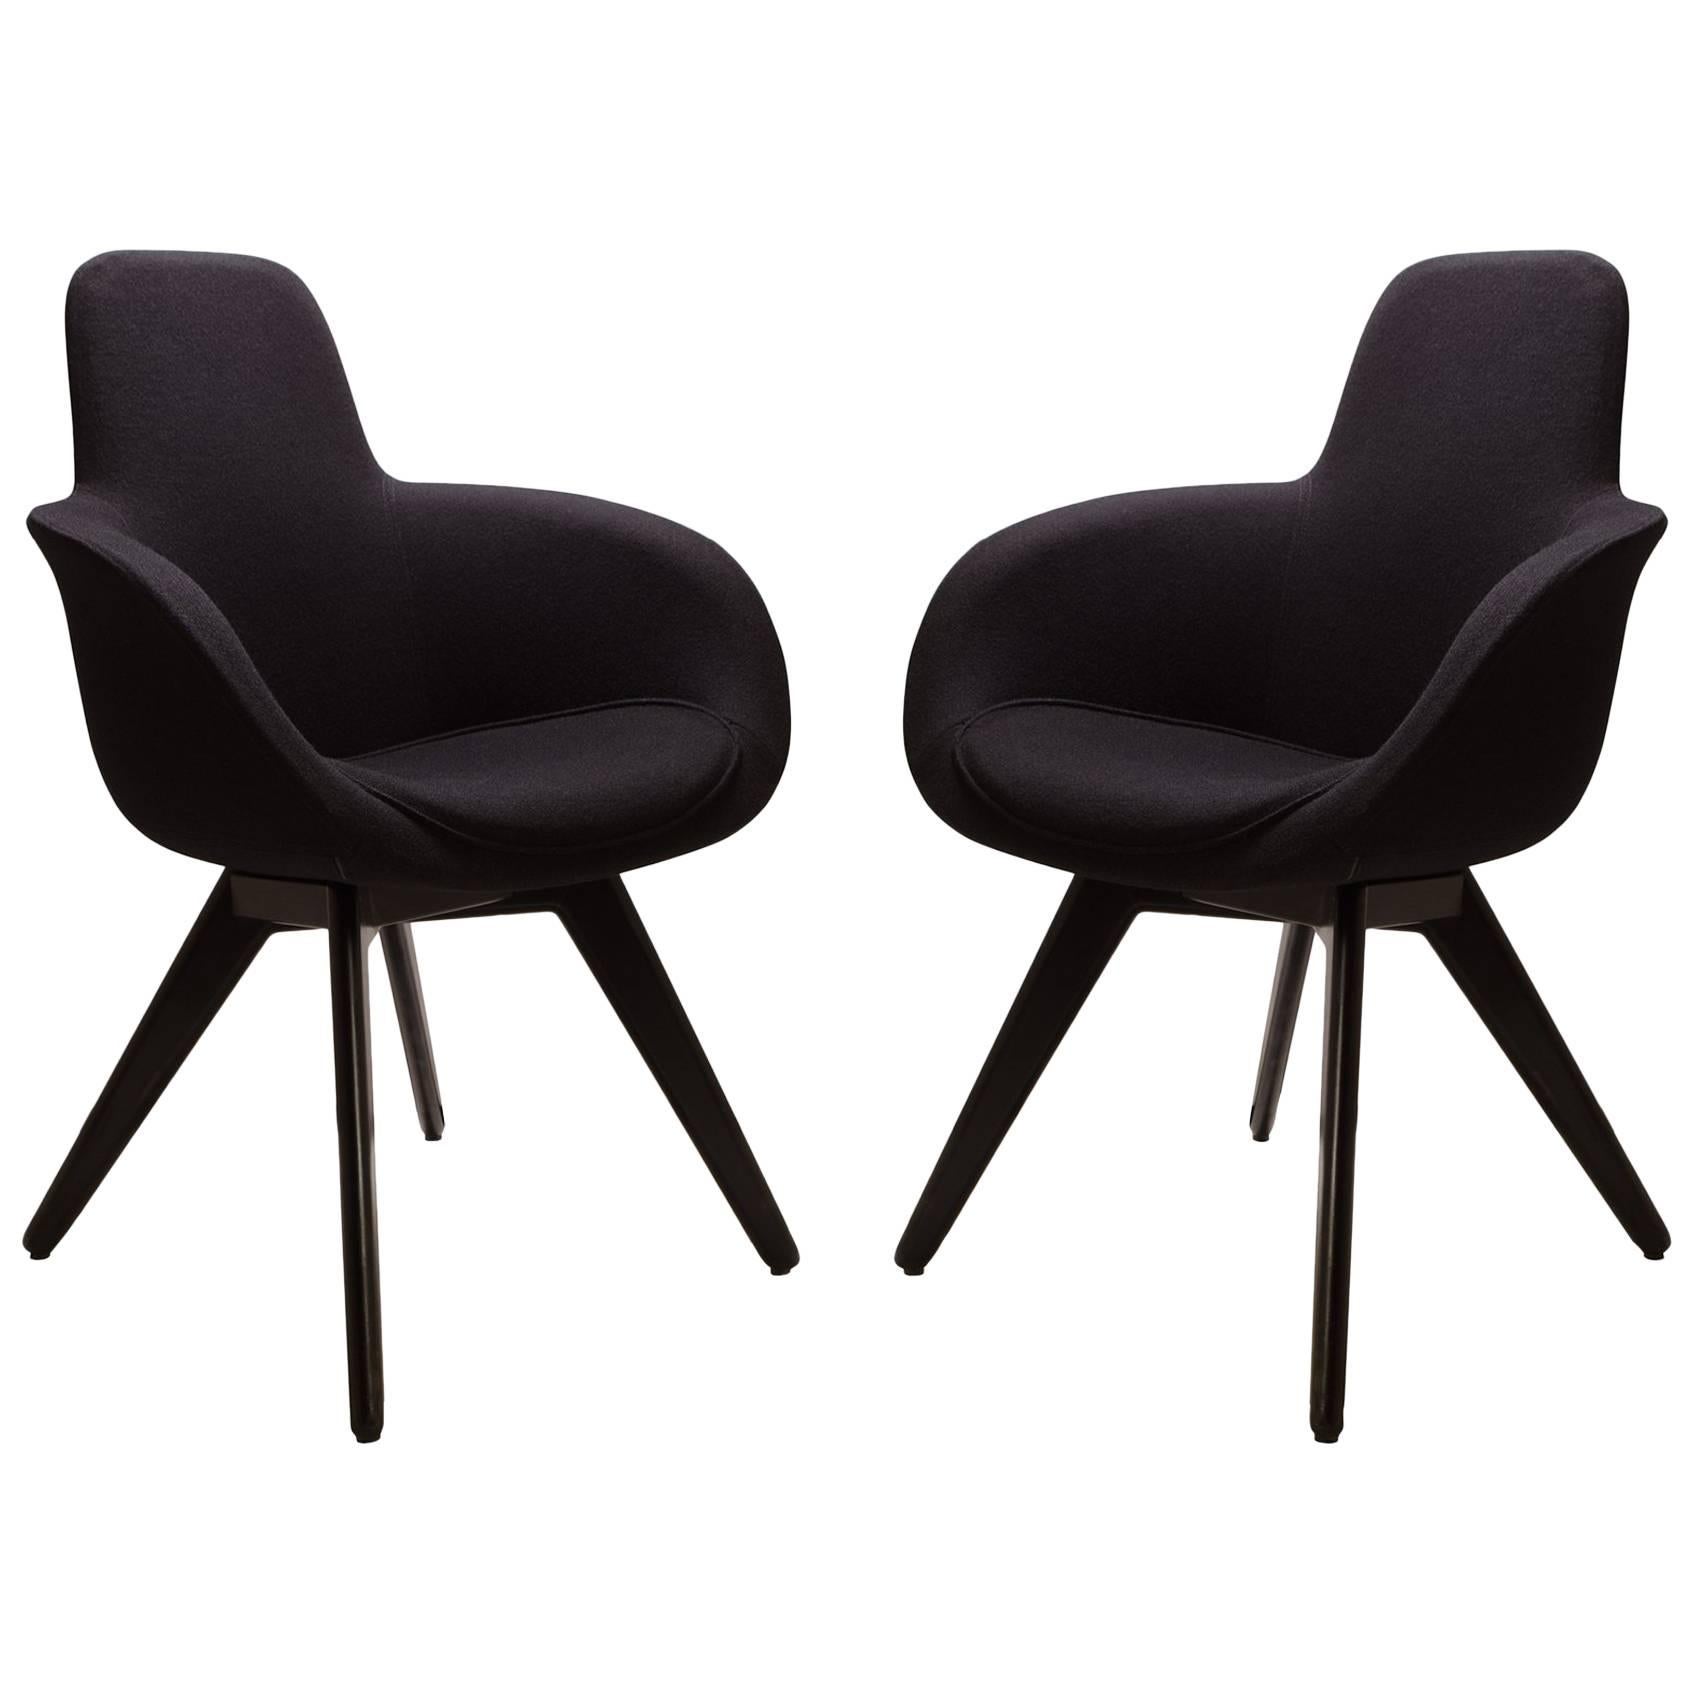 Scoop High Chairs in Black Wool by Tom Dixon, Pair